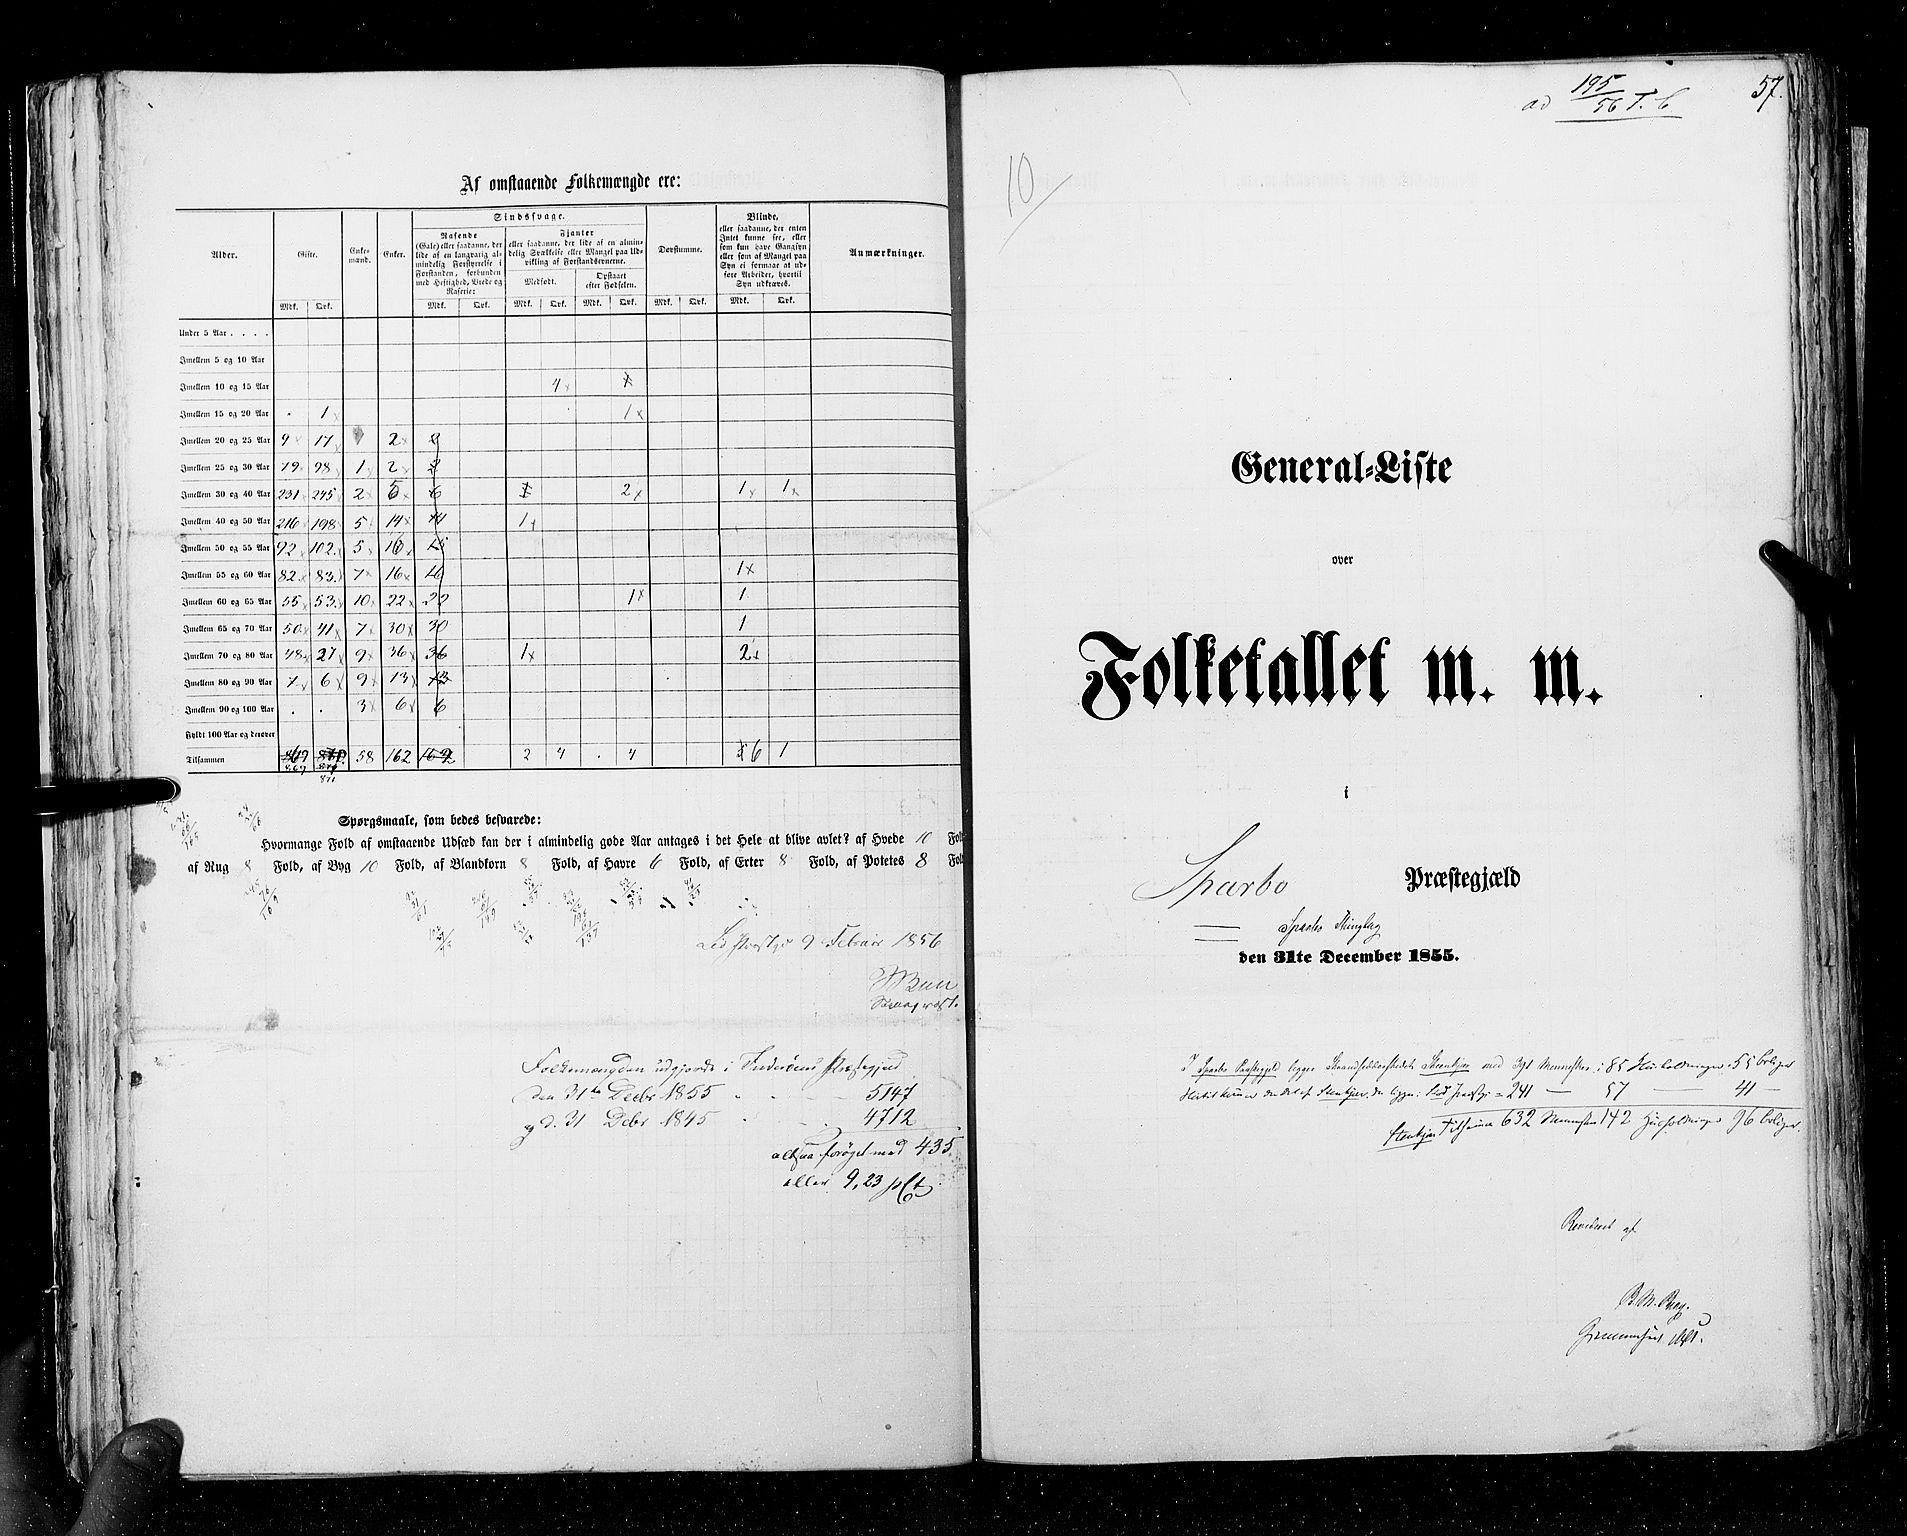 RA, Folketellingen 1855, bind 6A: Nordre Trondhjem amt og Nordland amt, 1855, s. 57